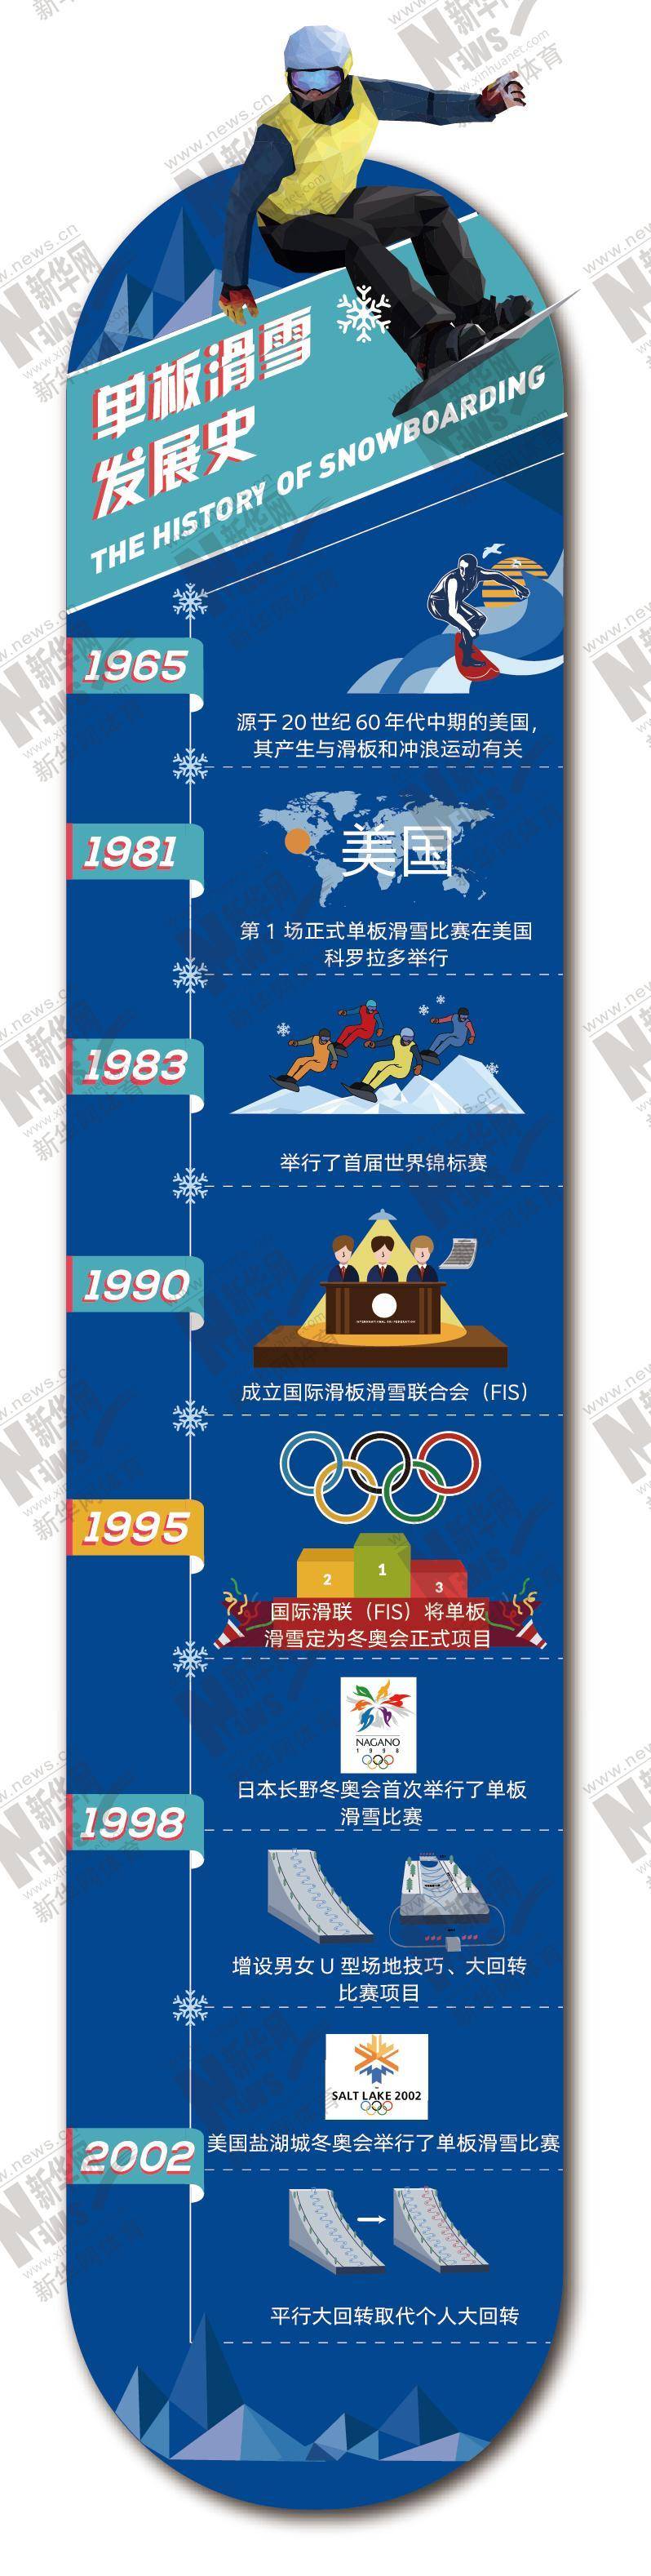 十博体育图解北京冬奥项目⑩——“单板滑雪”源于冲浪的滑雪项目(图2)